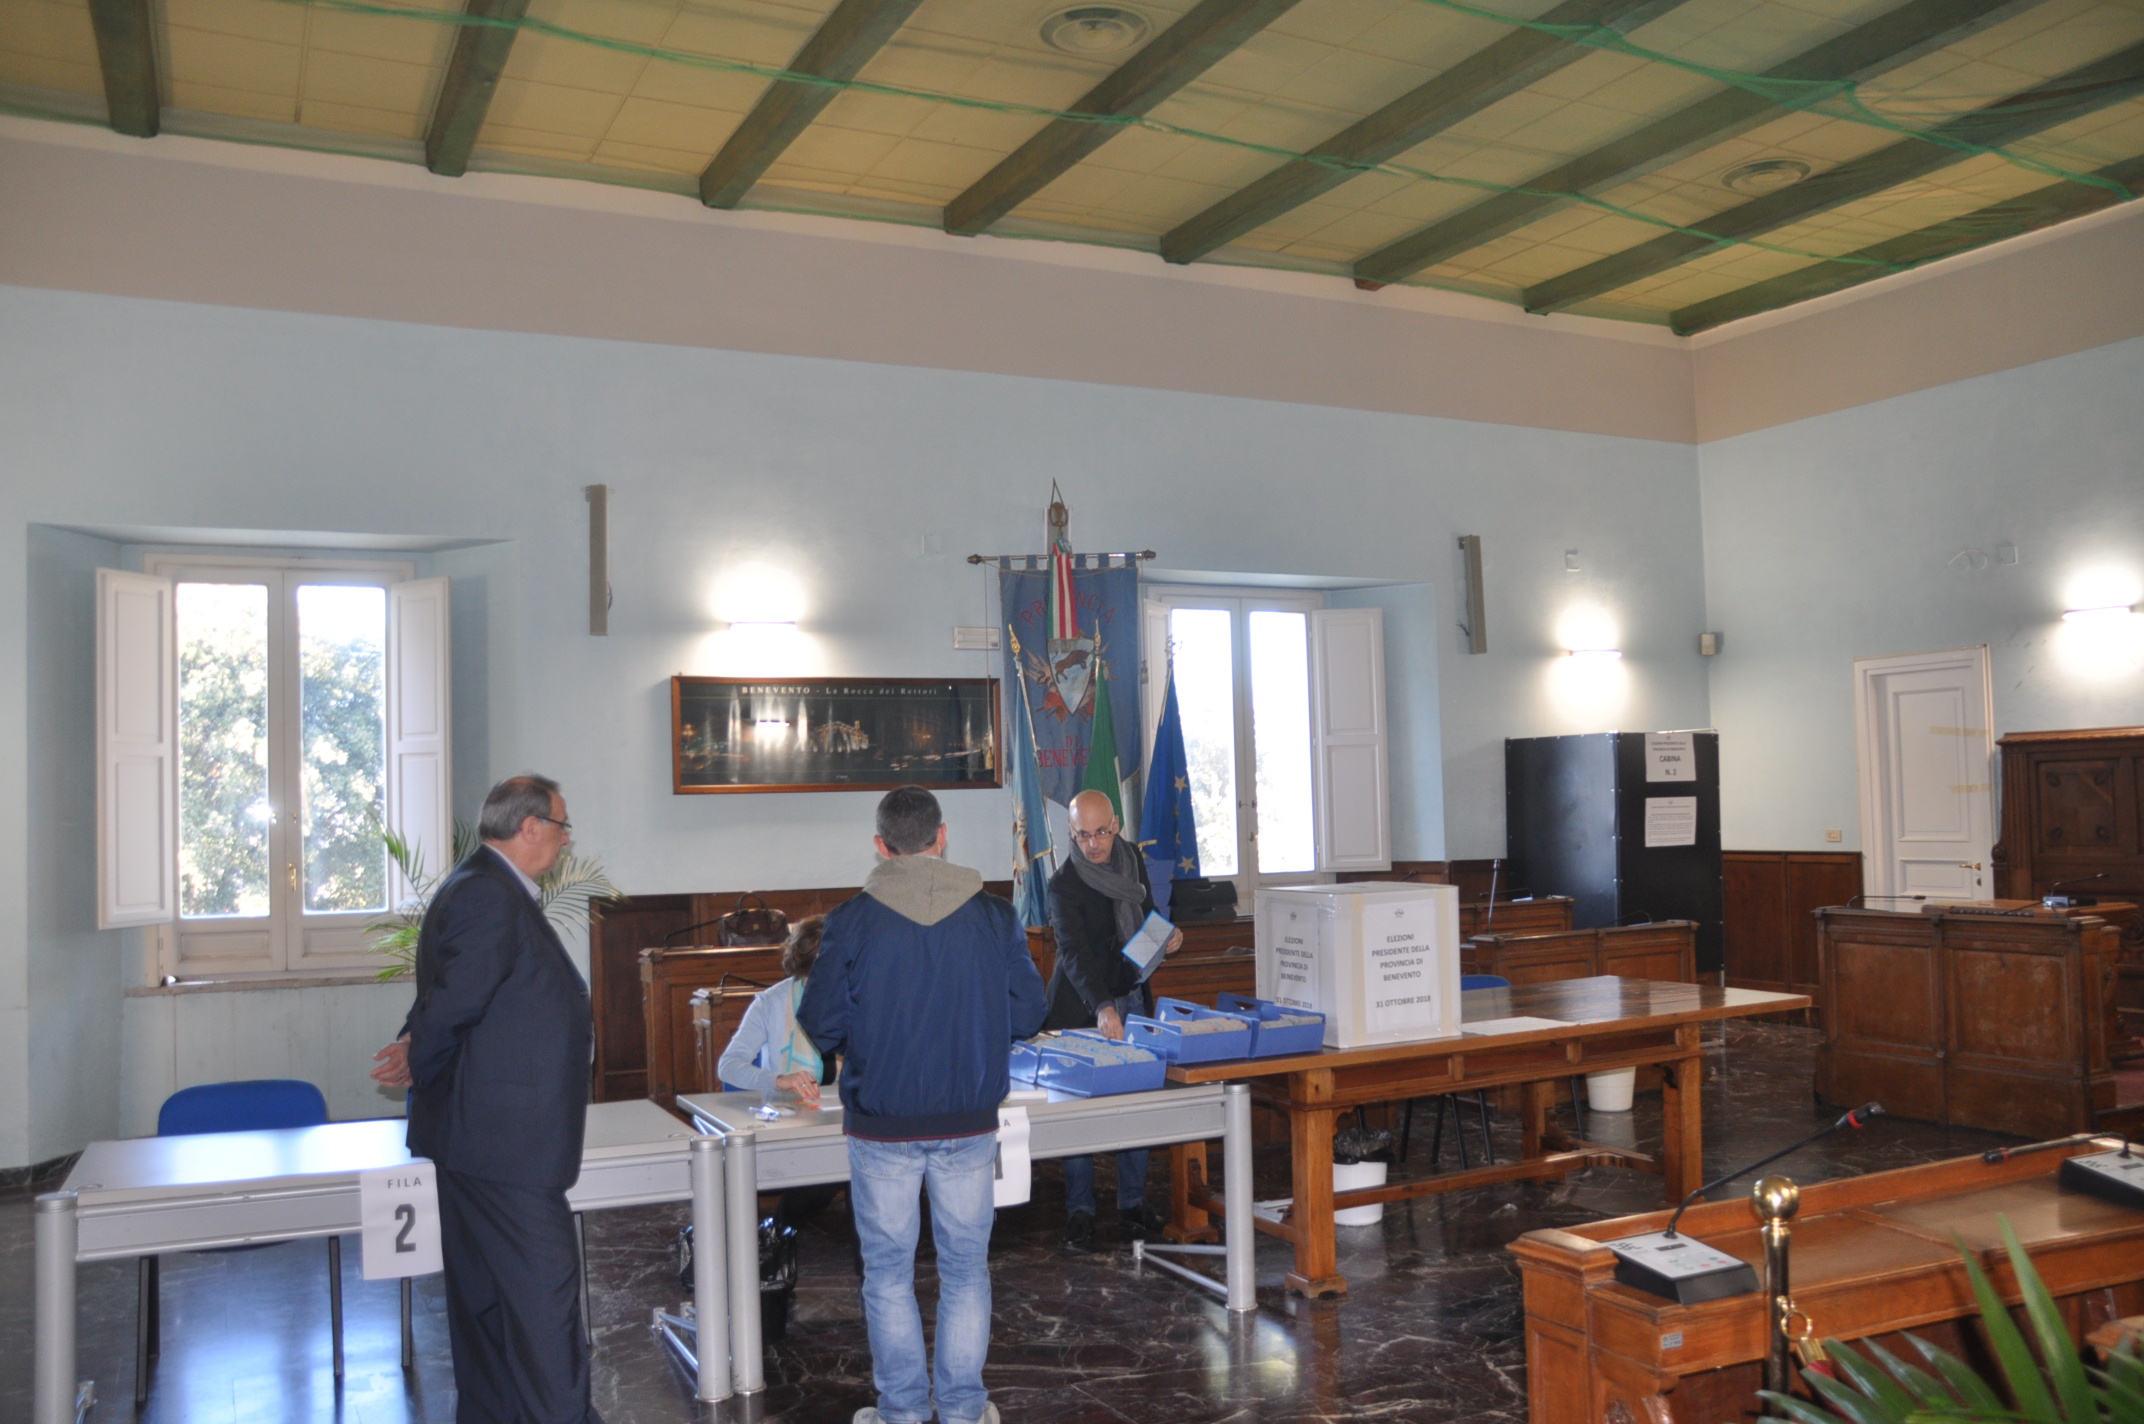 Benevento| Provinciali, al via il voto